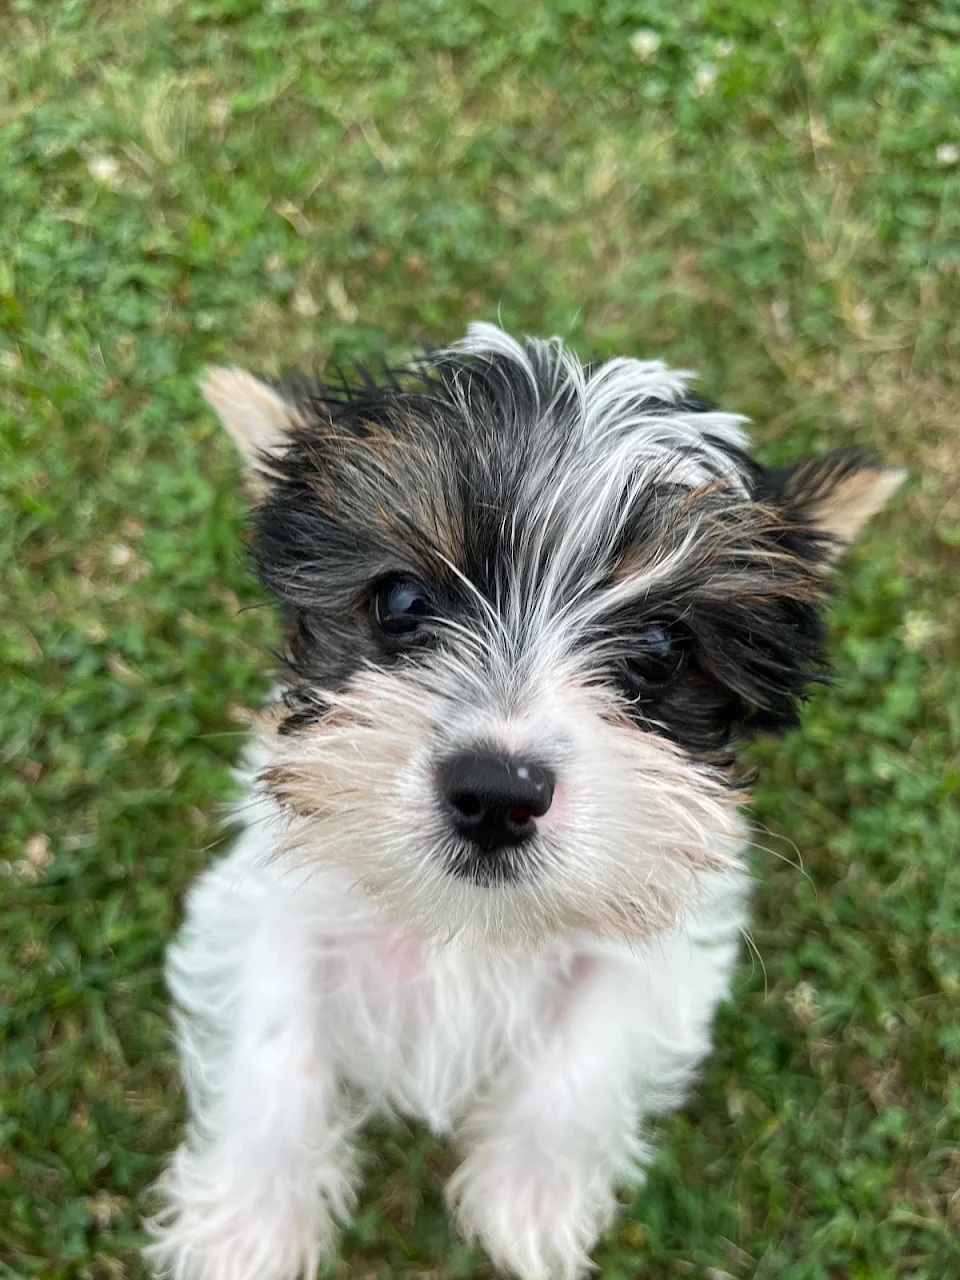 Mom’s new puppy, meet Bruiser.